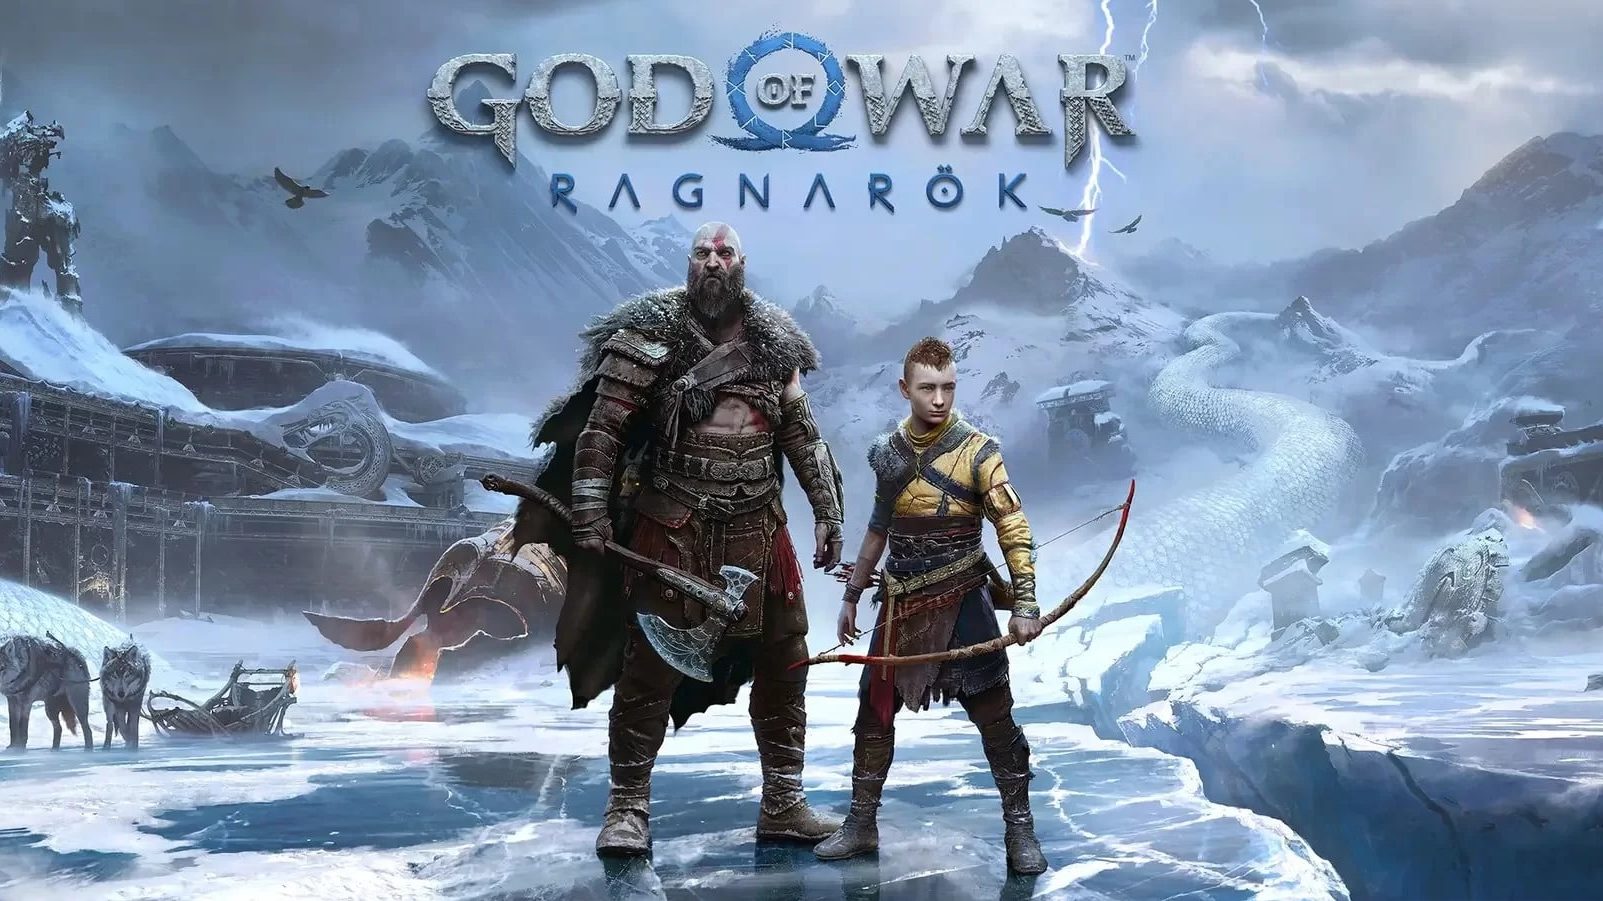 God of War: Ragnarok foi o melhor jogo de 2022, segundo os